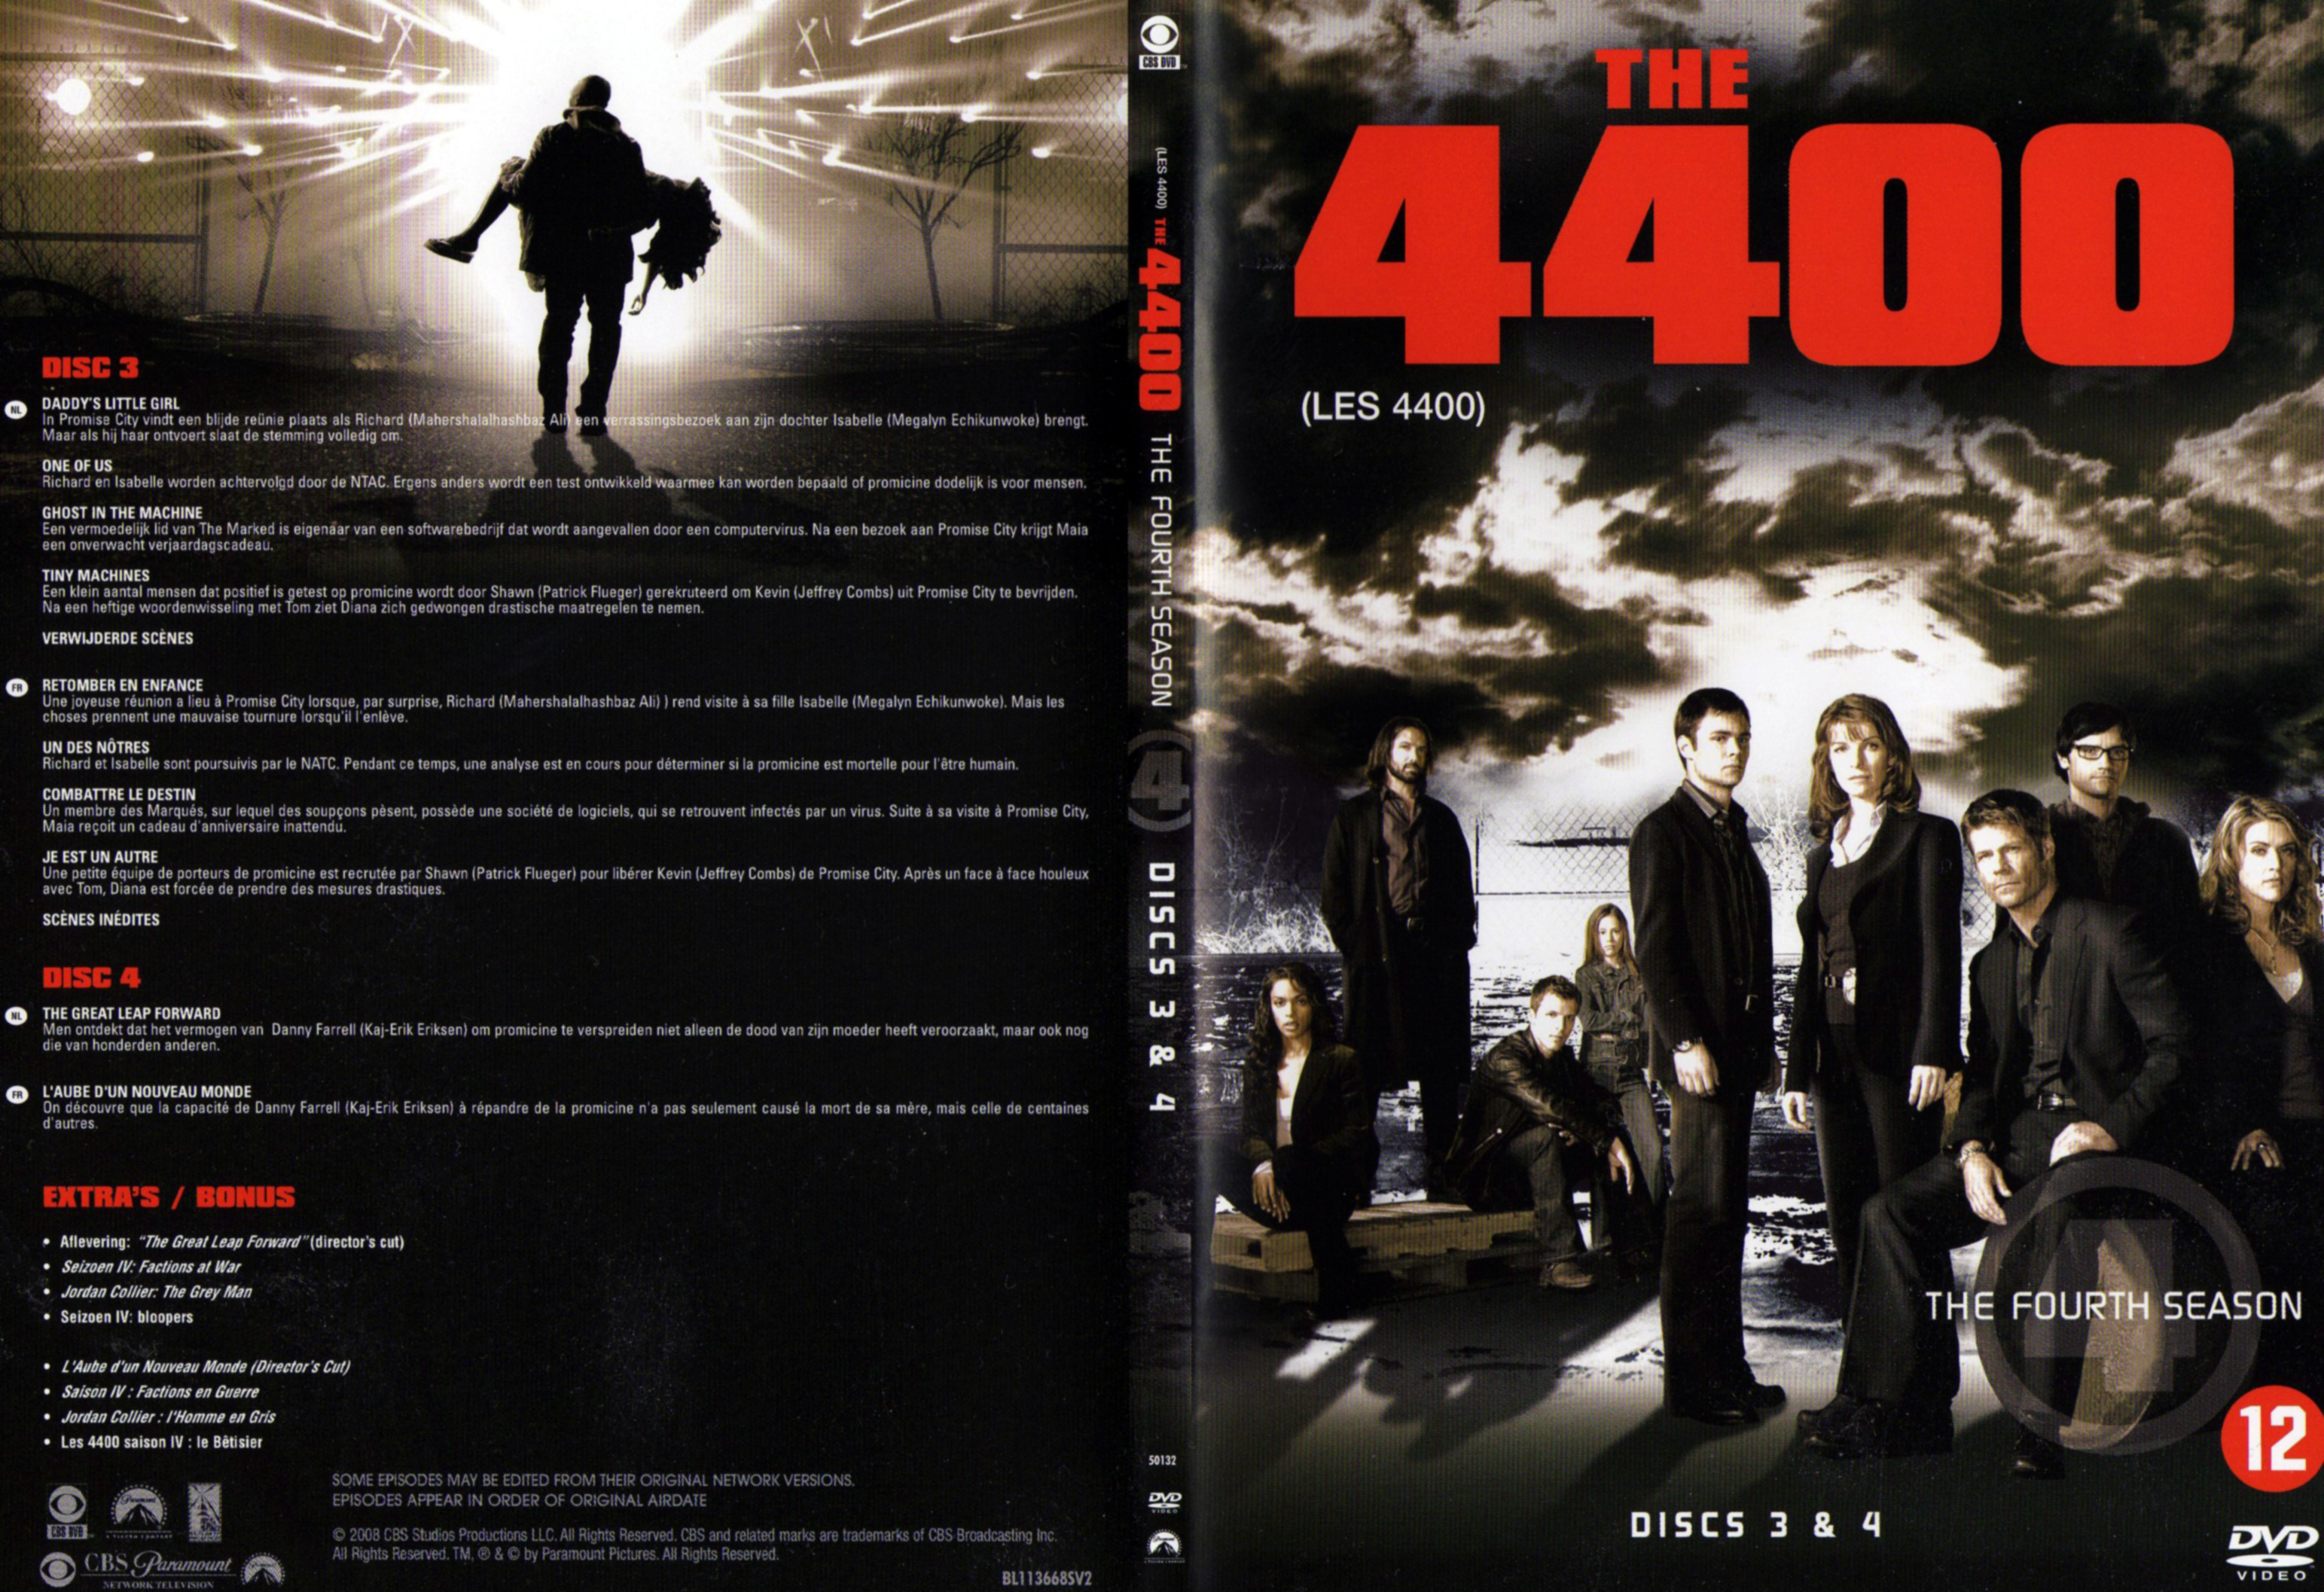 Jaquette DVD Les 4400 Saison 4 DVD 2